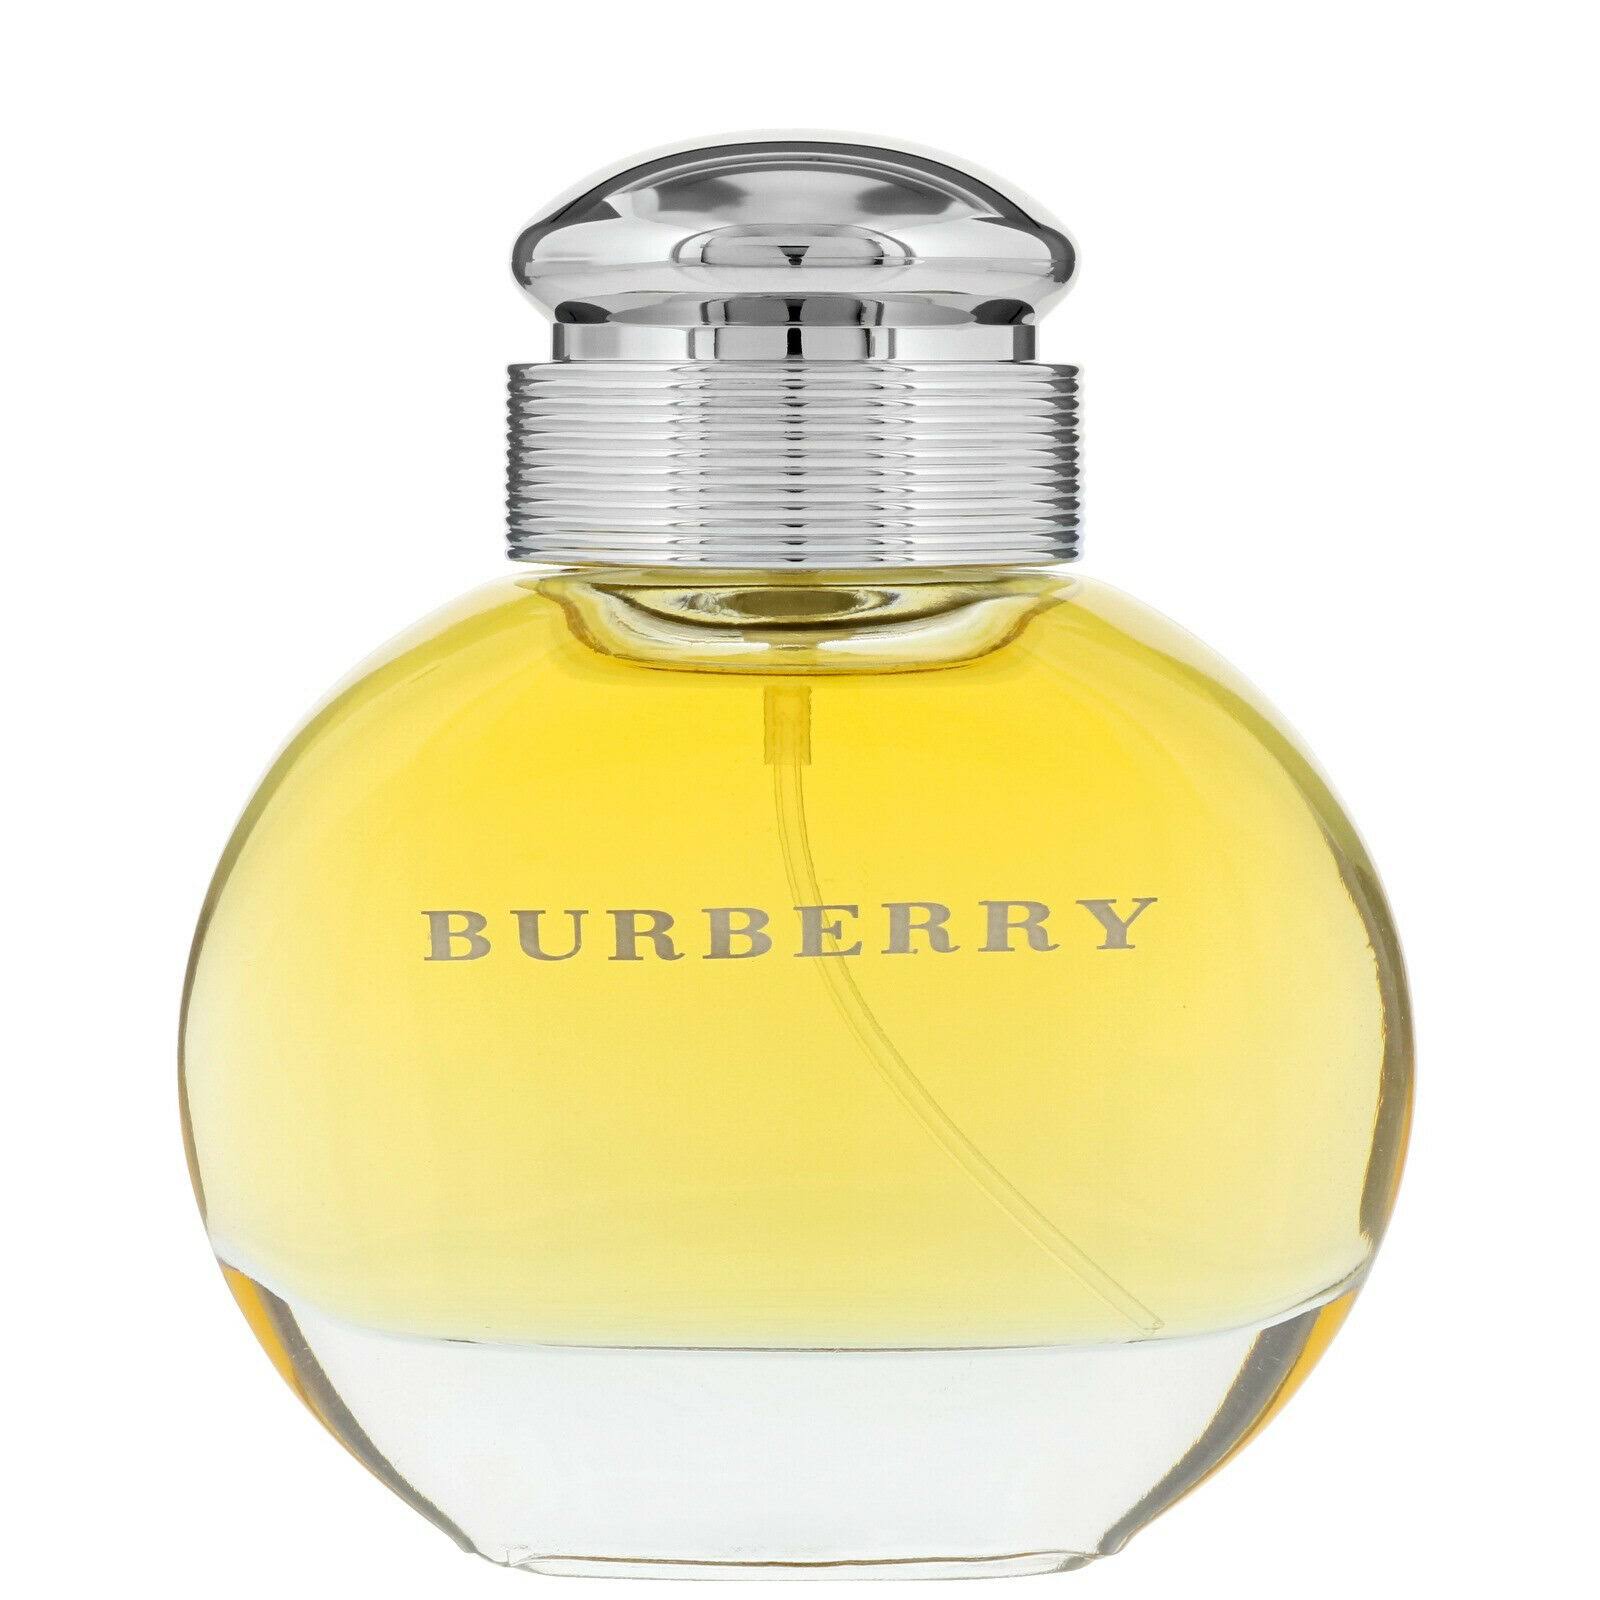 Burberry Eau de Parfum Natural Spray - 50ml